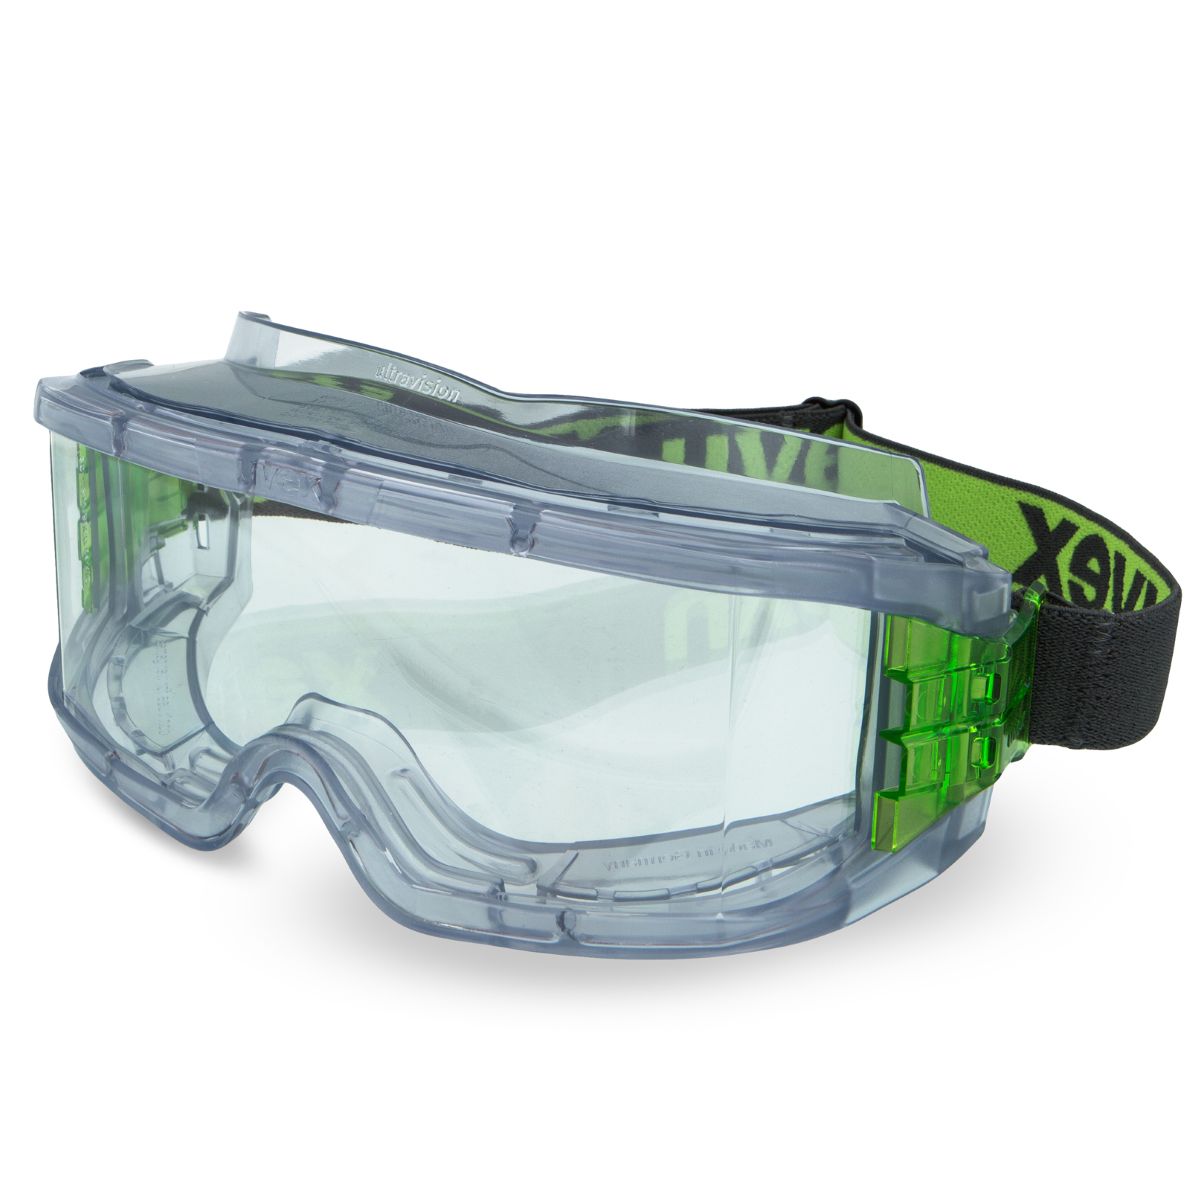 Uvex Vollsichtbrille 9301 ultravision, grün/grau, Scheibe: farblos, Schutz: 2-1,2